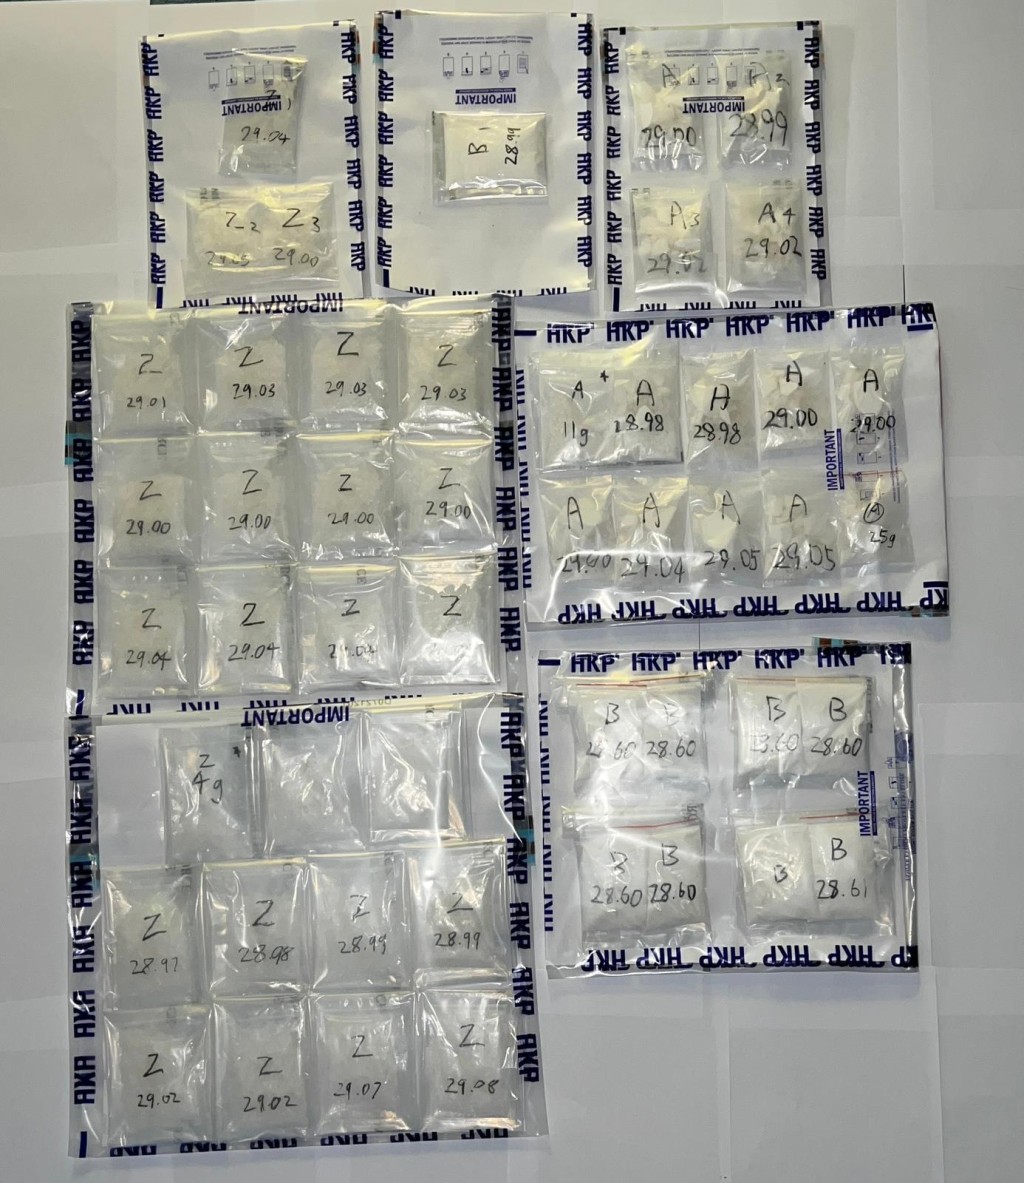 案件中检获的毒品共重超过1300克怀疑毒品，价值约100万港元。警方提供